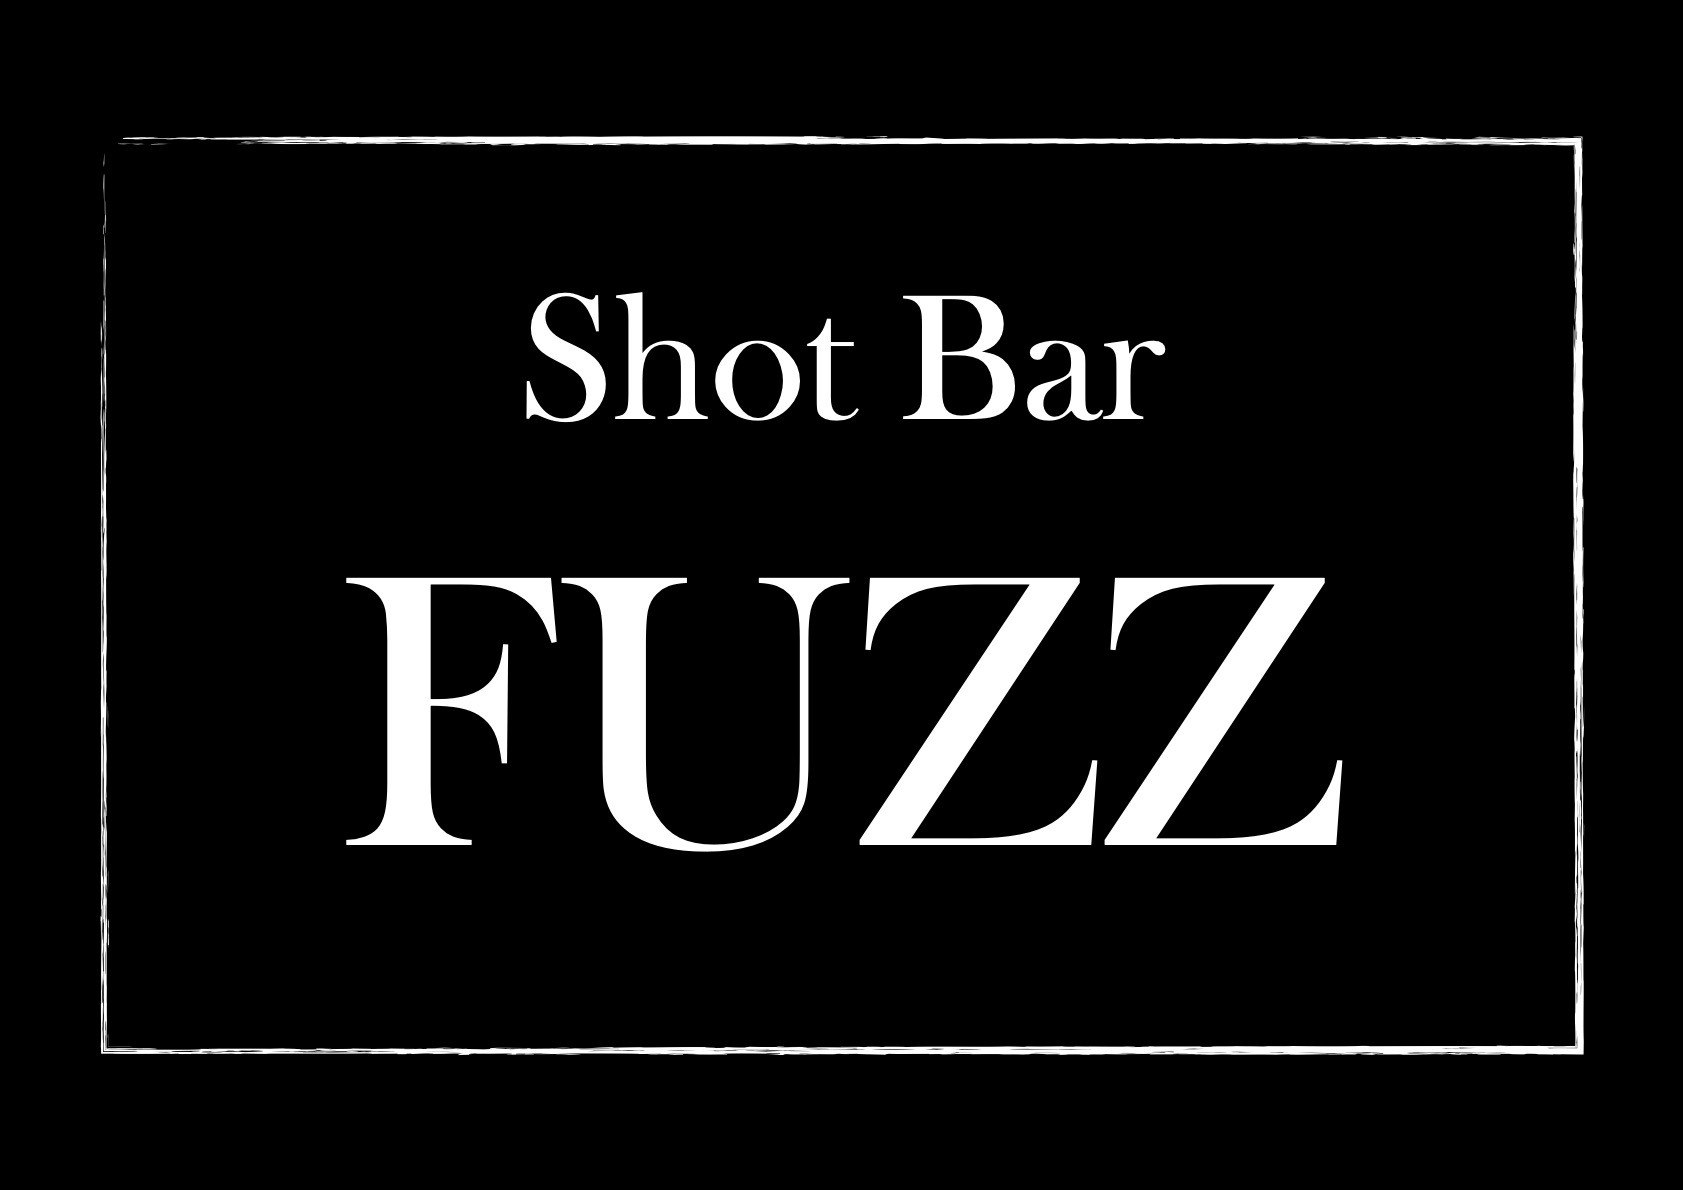 豊田市でショットバーをお探しなら、カップルのデートランキングでも高評なShot Bar FUZZ（ショットバーファズ）へ。